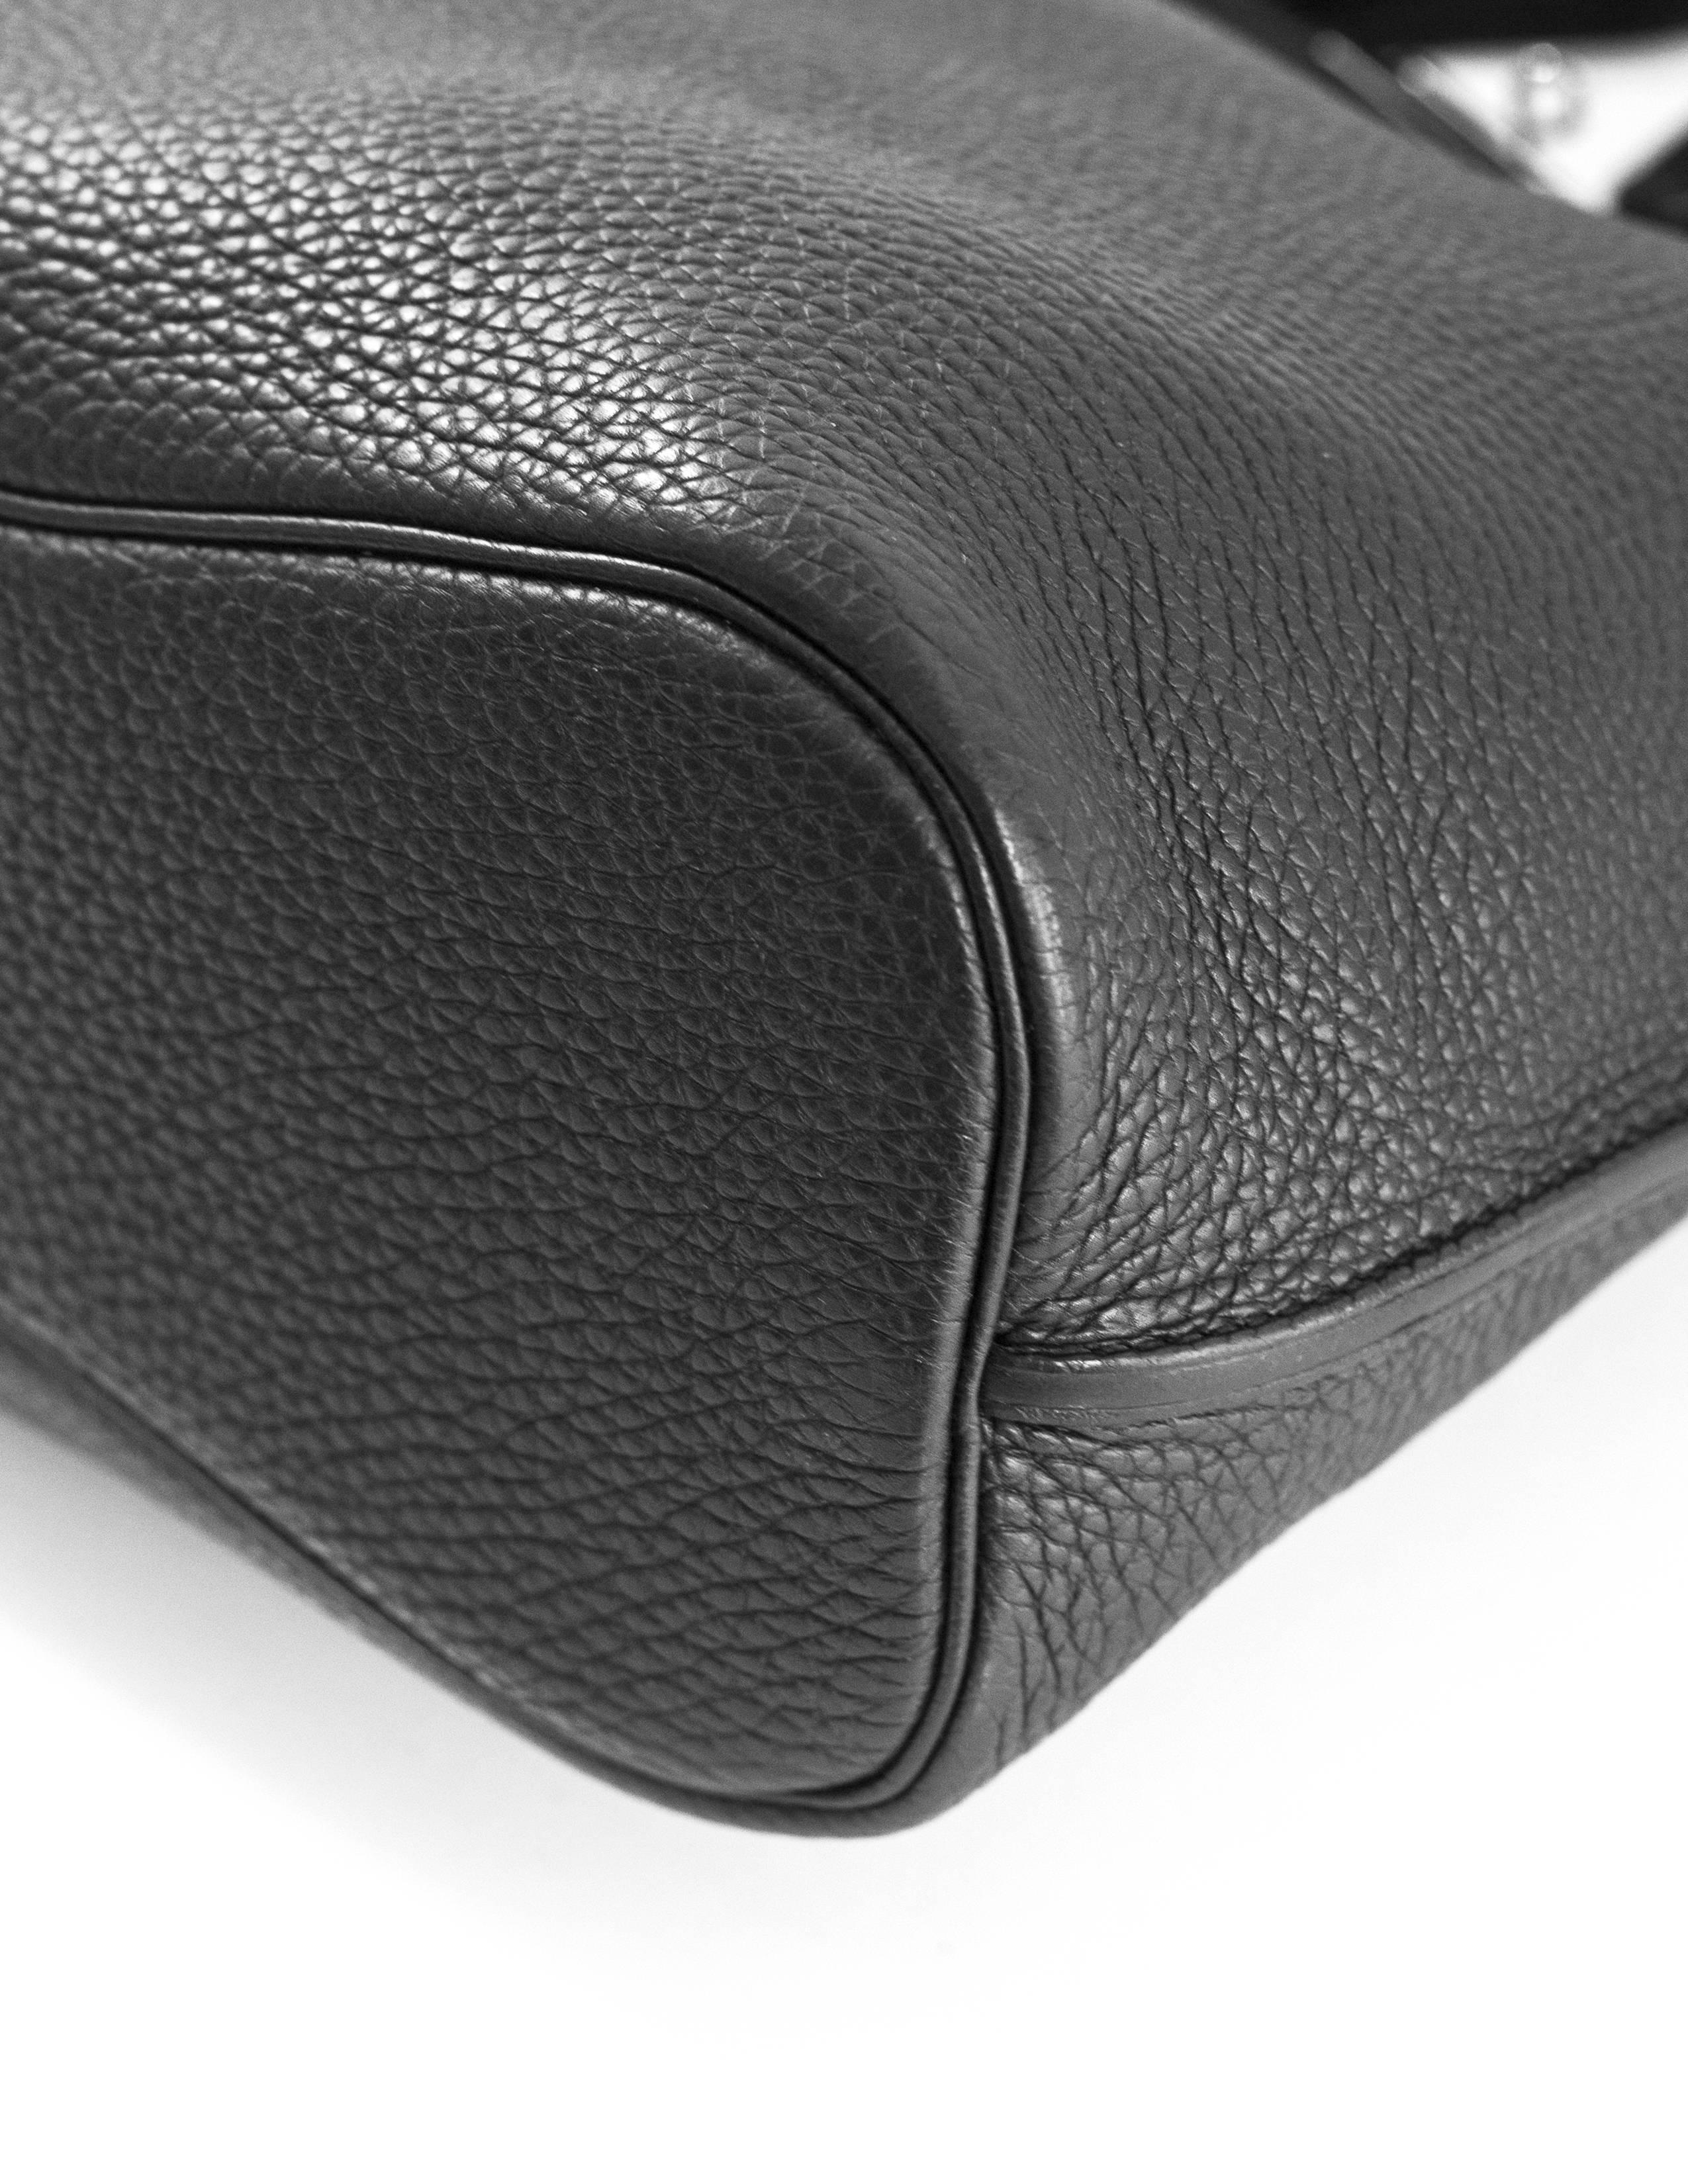 Women's Hermes Black Clemence Leather So Kelly 26 Bag rt. $7, 400